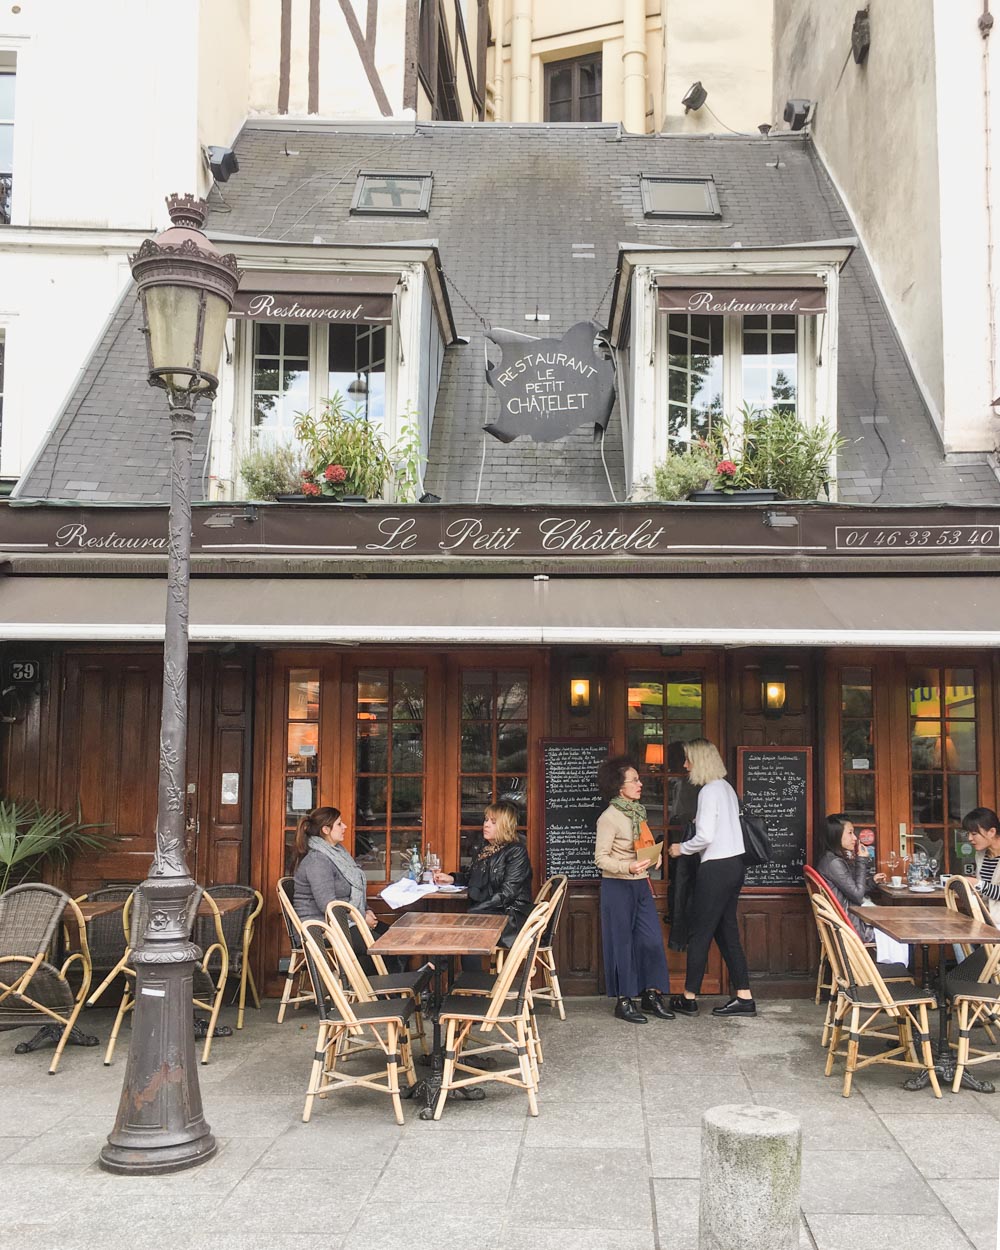 Adorable restaurant in Paris | Le Petite Chatelet 